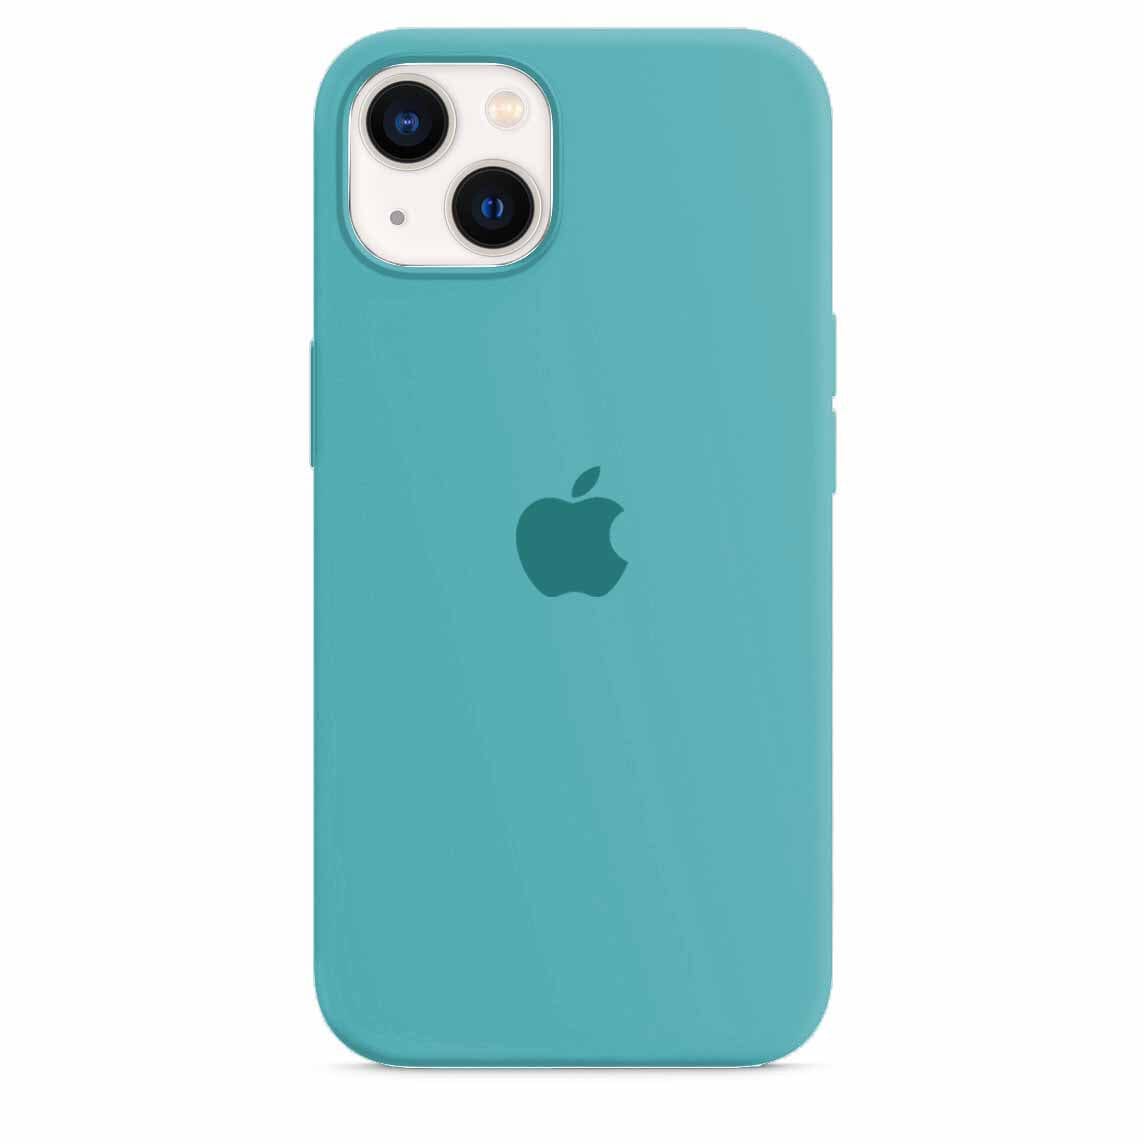 Husa iPhone Silicone Case Sea Blue Anca's Store 13 mini 